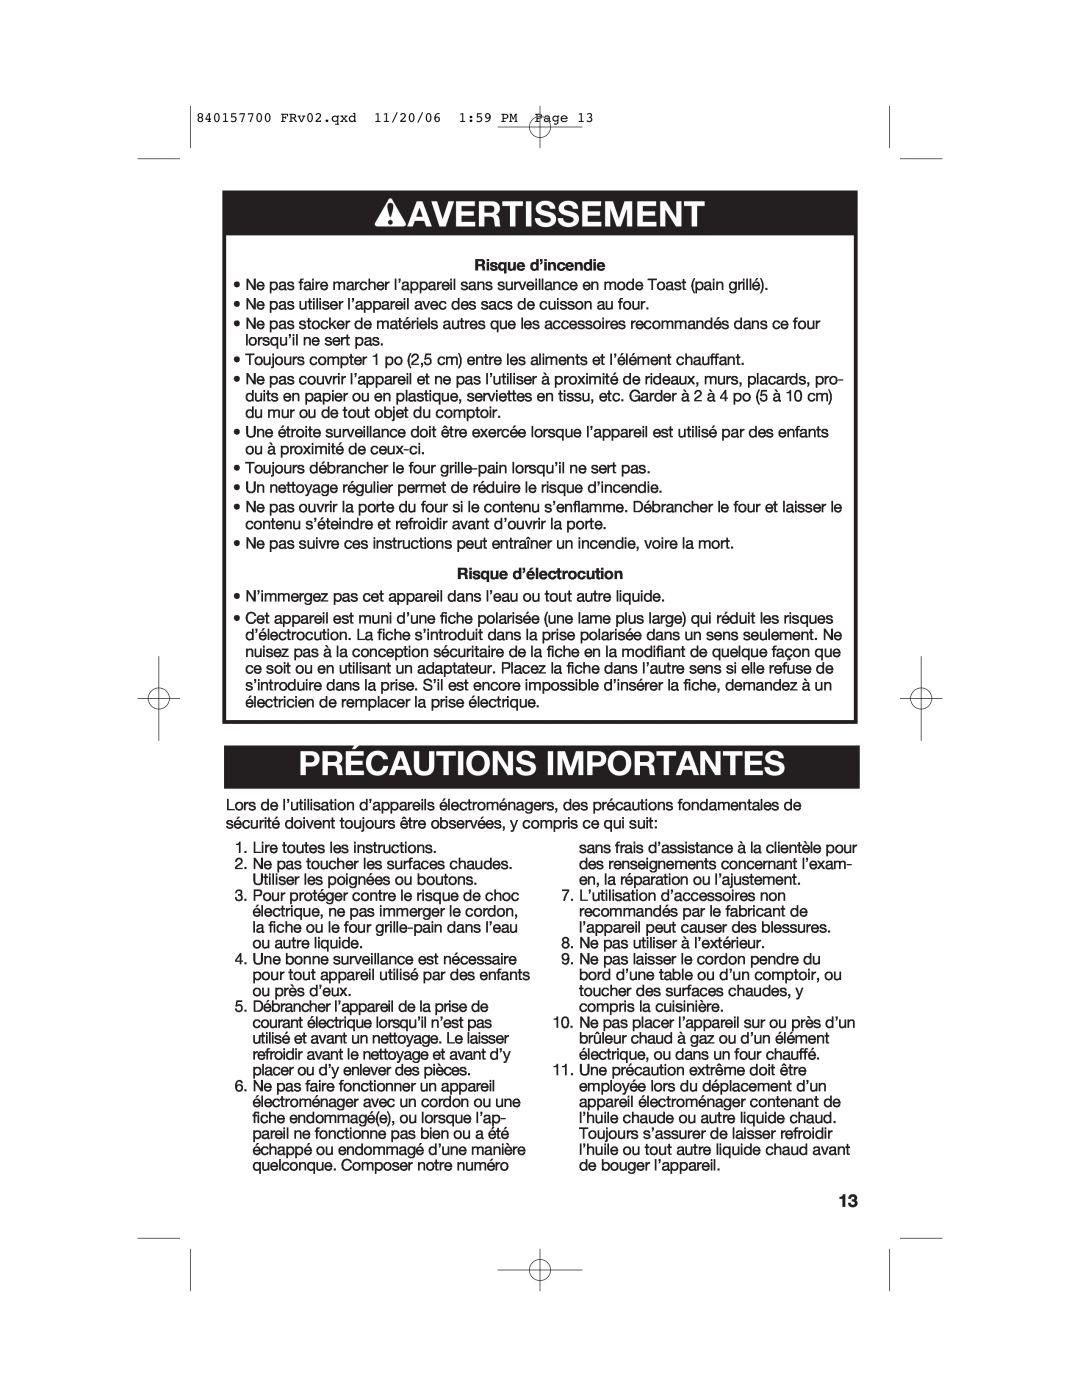 Hamilton Beach 31150C manual wAVERTISSEMENT, Précautions Importantes, Risque d’incendie, Risque d’électrocution 